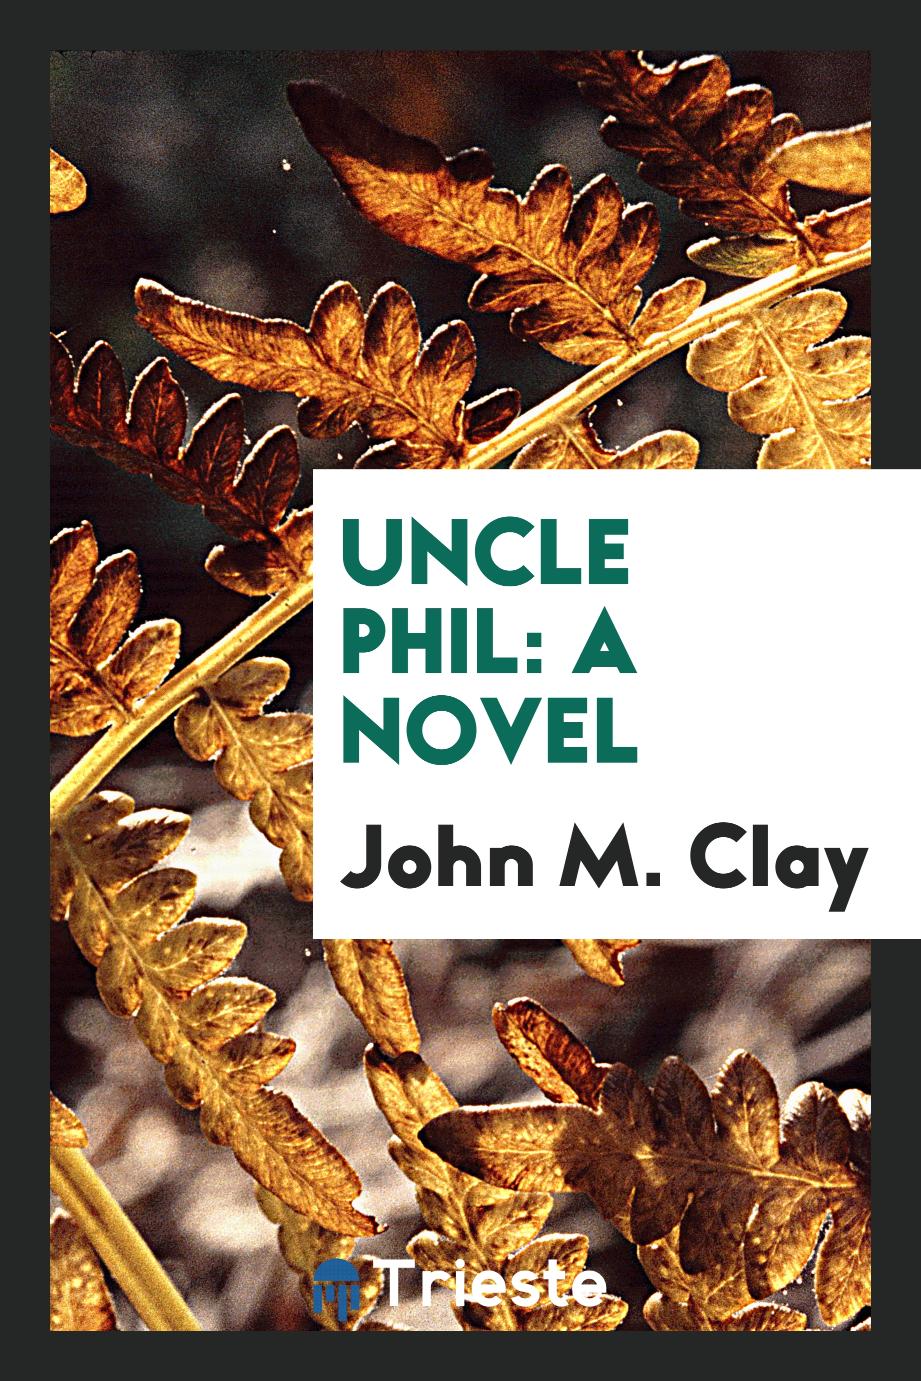 Uncle Phil: a novel